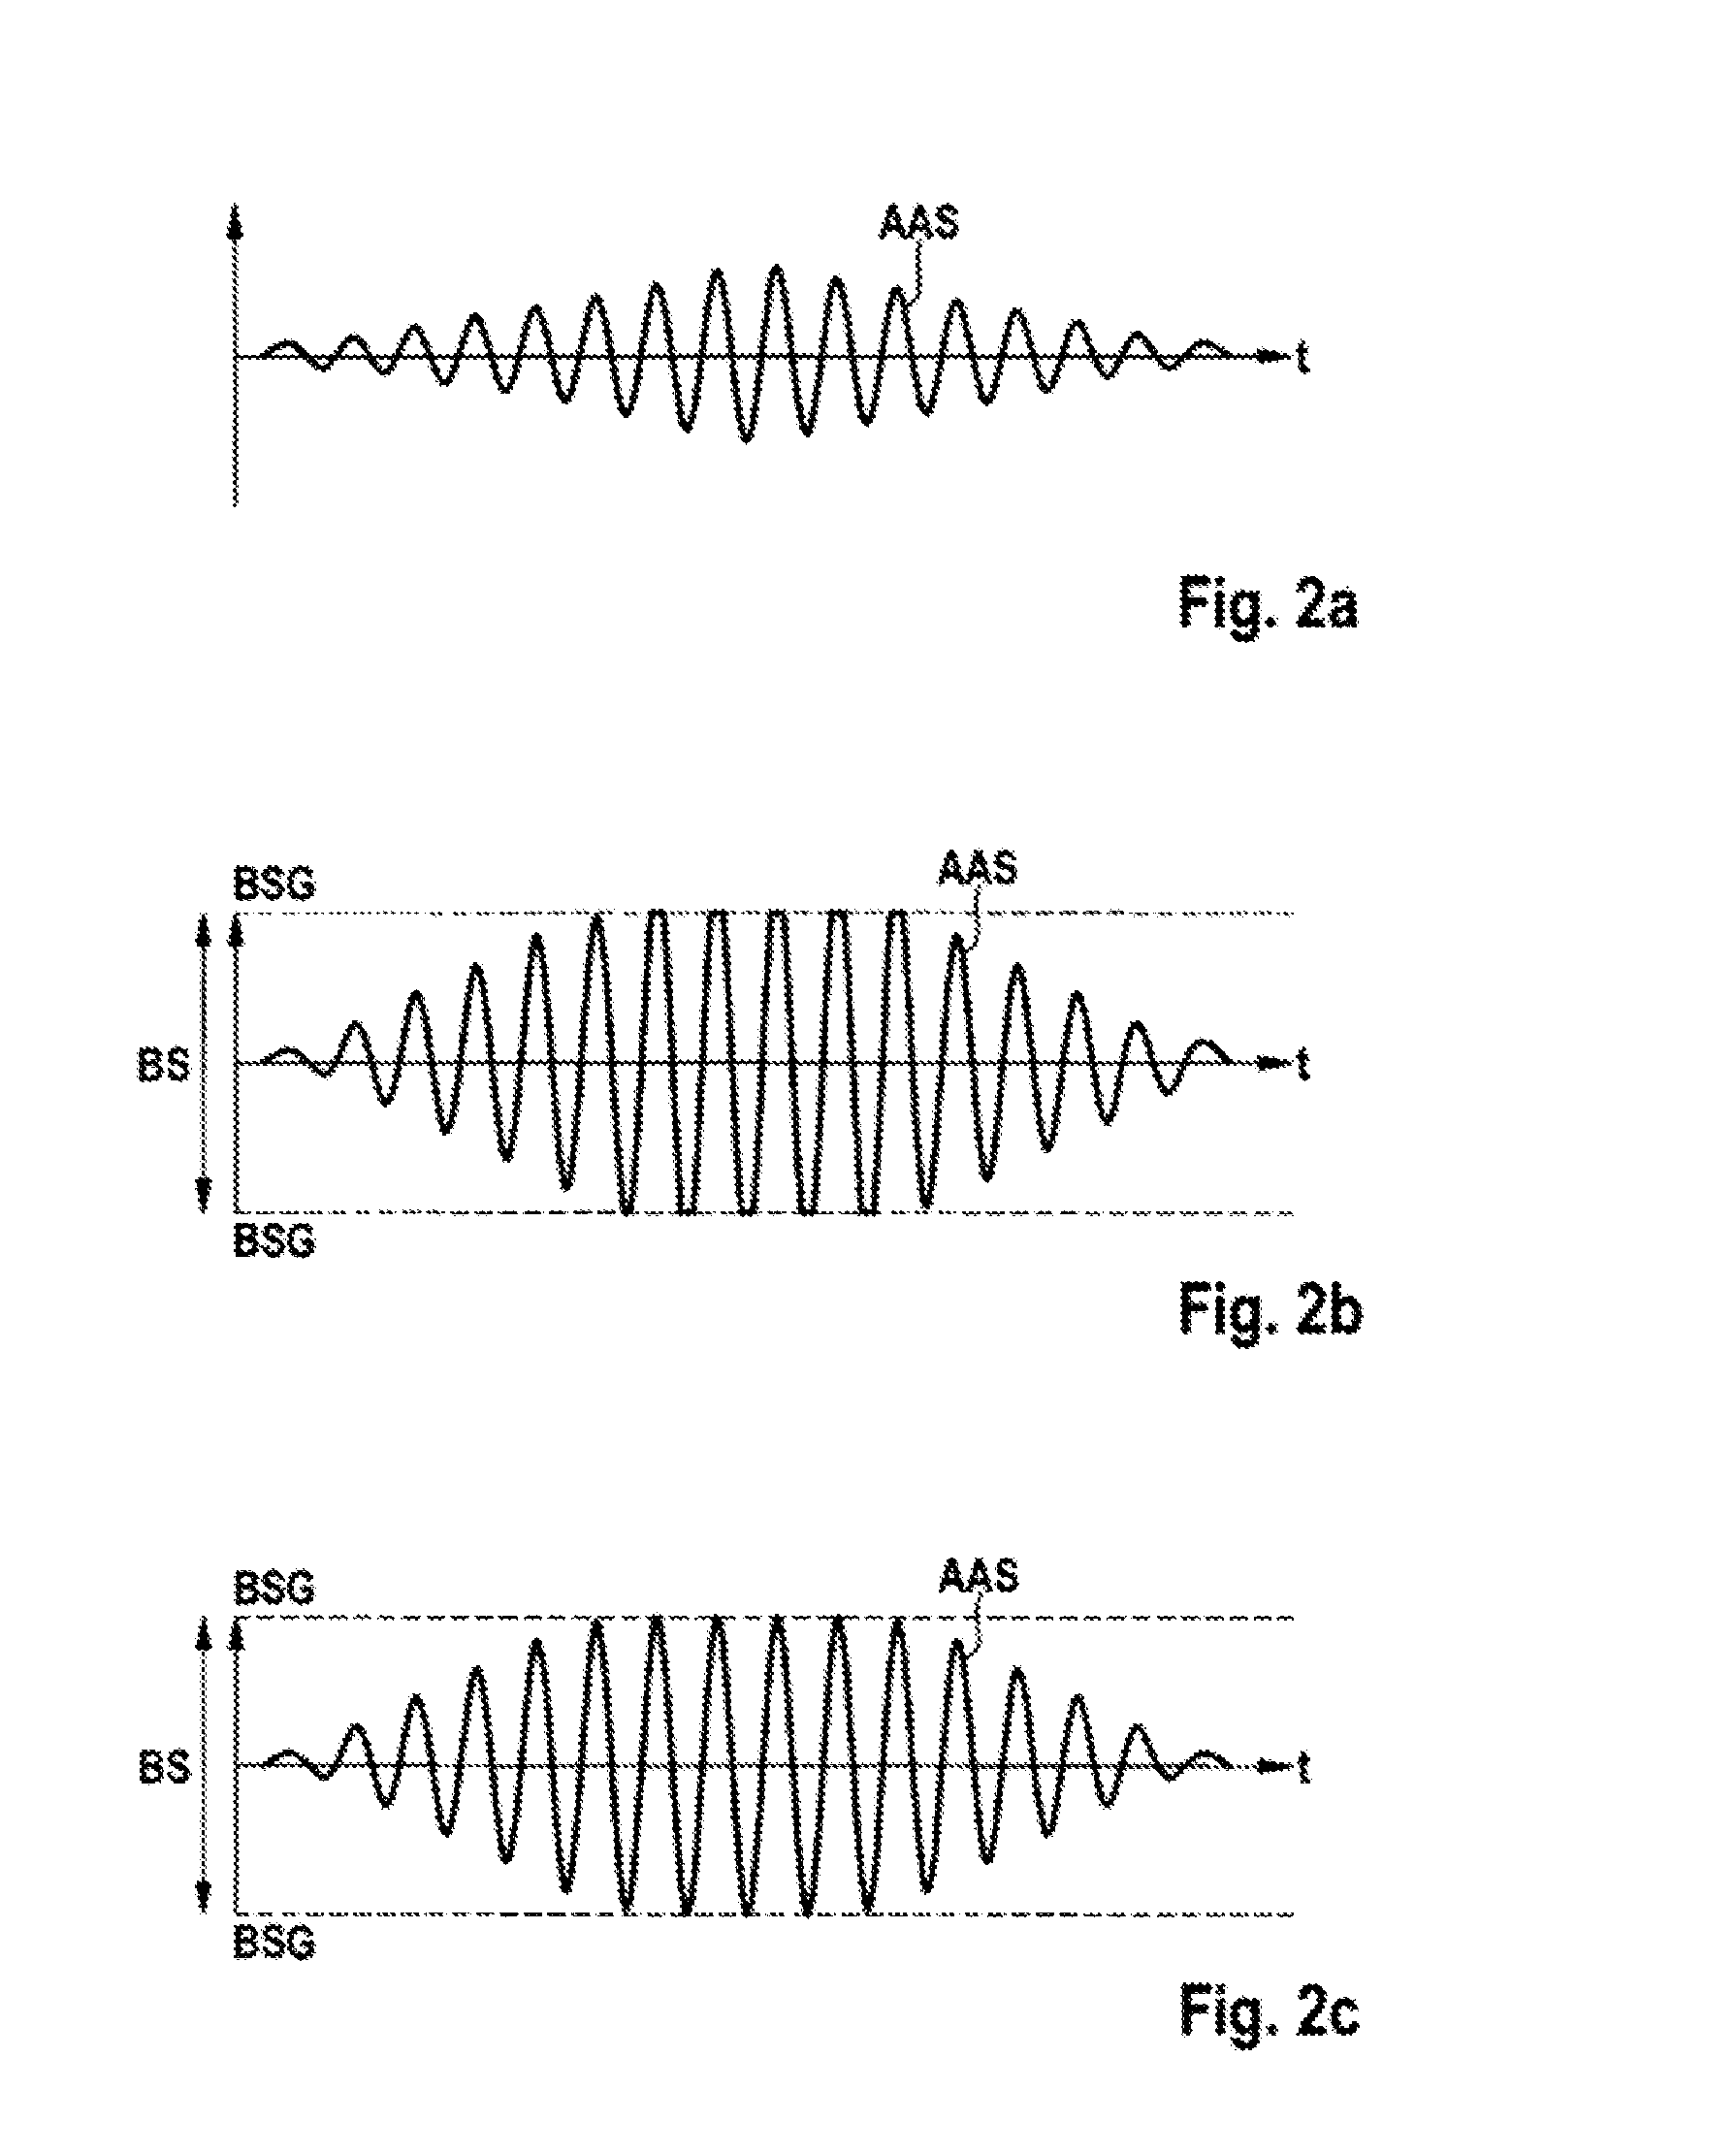 Amplifier arrangement with limiting module